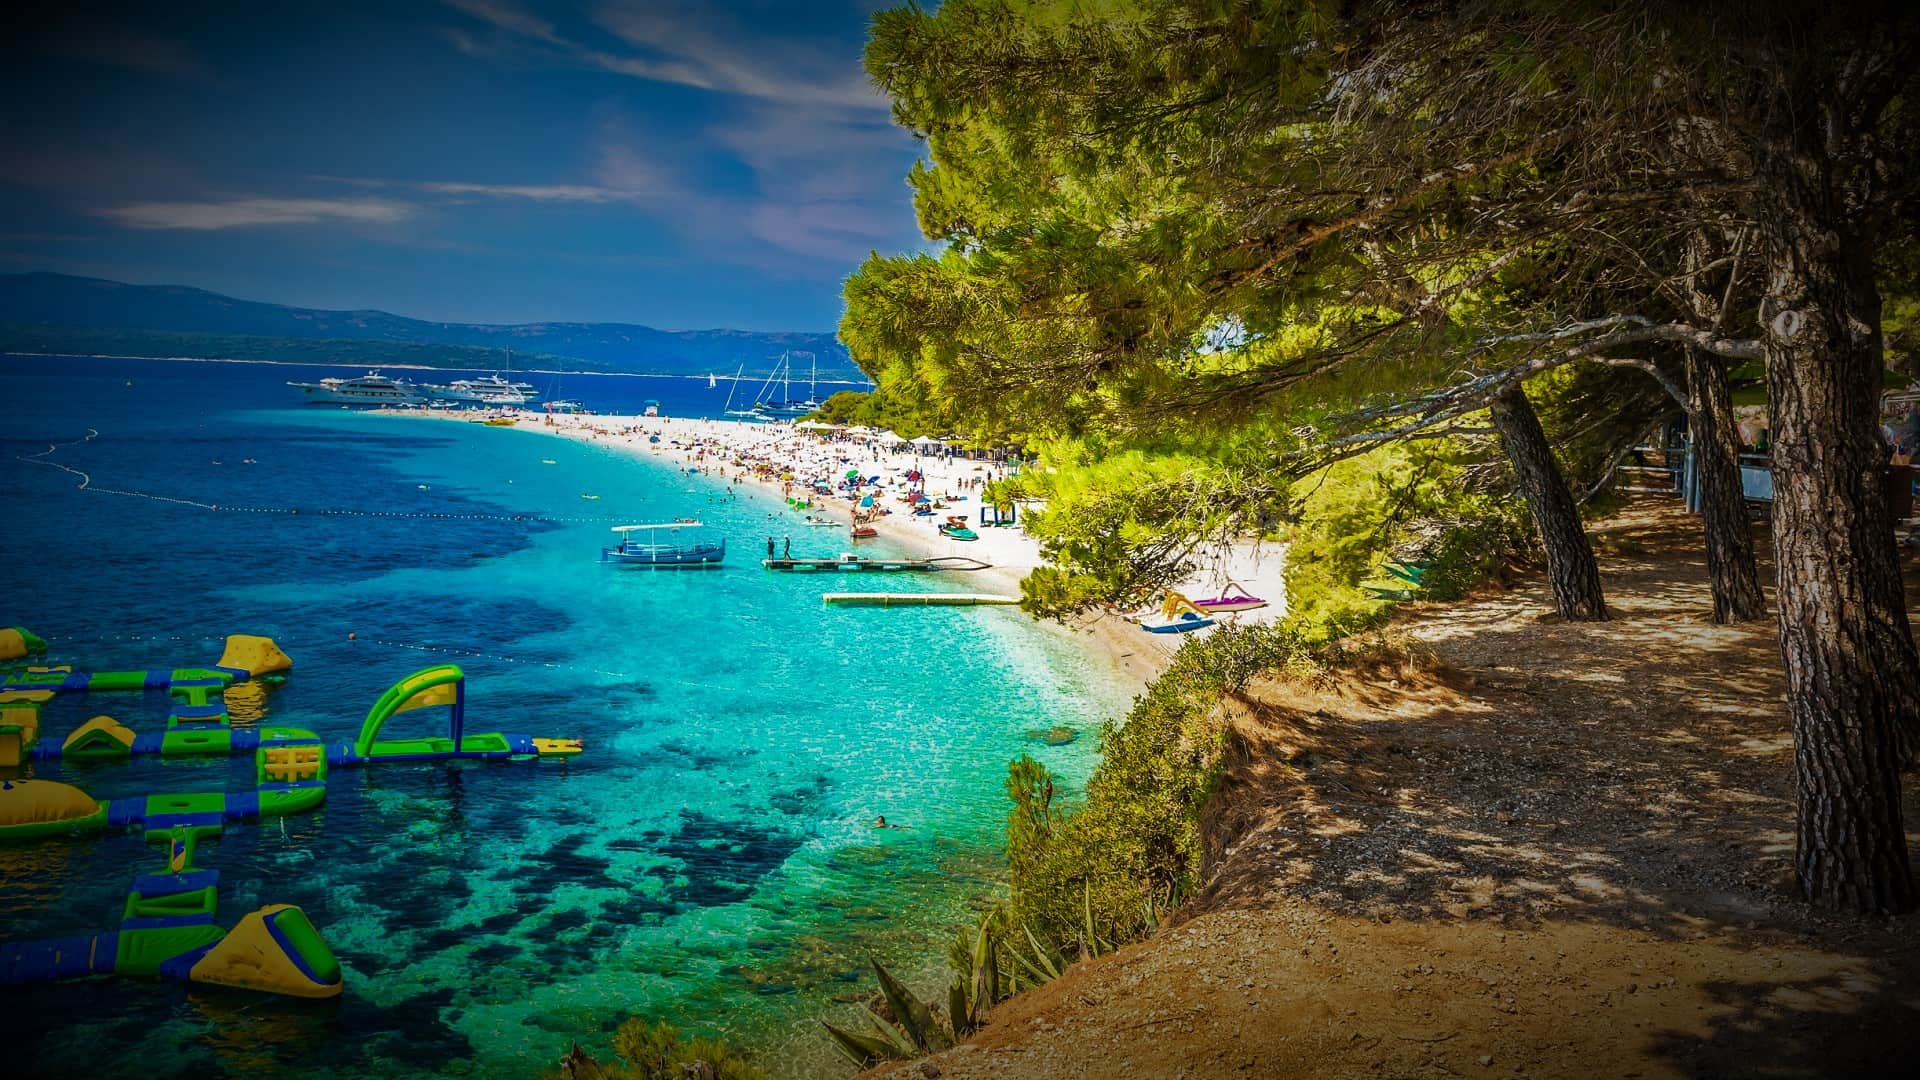 Objavte najkrajšie pláže v Chorvátsku